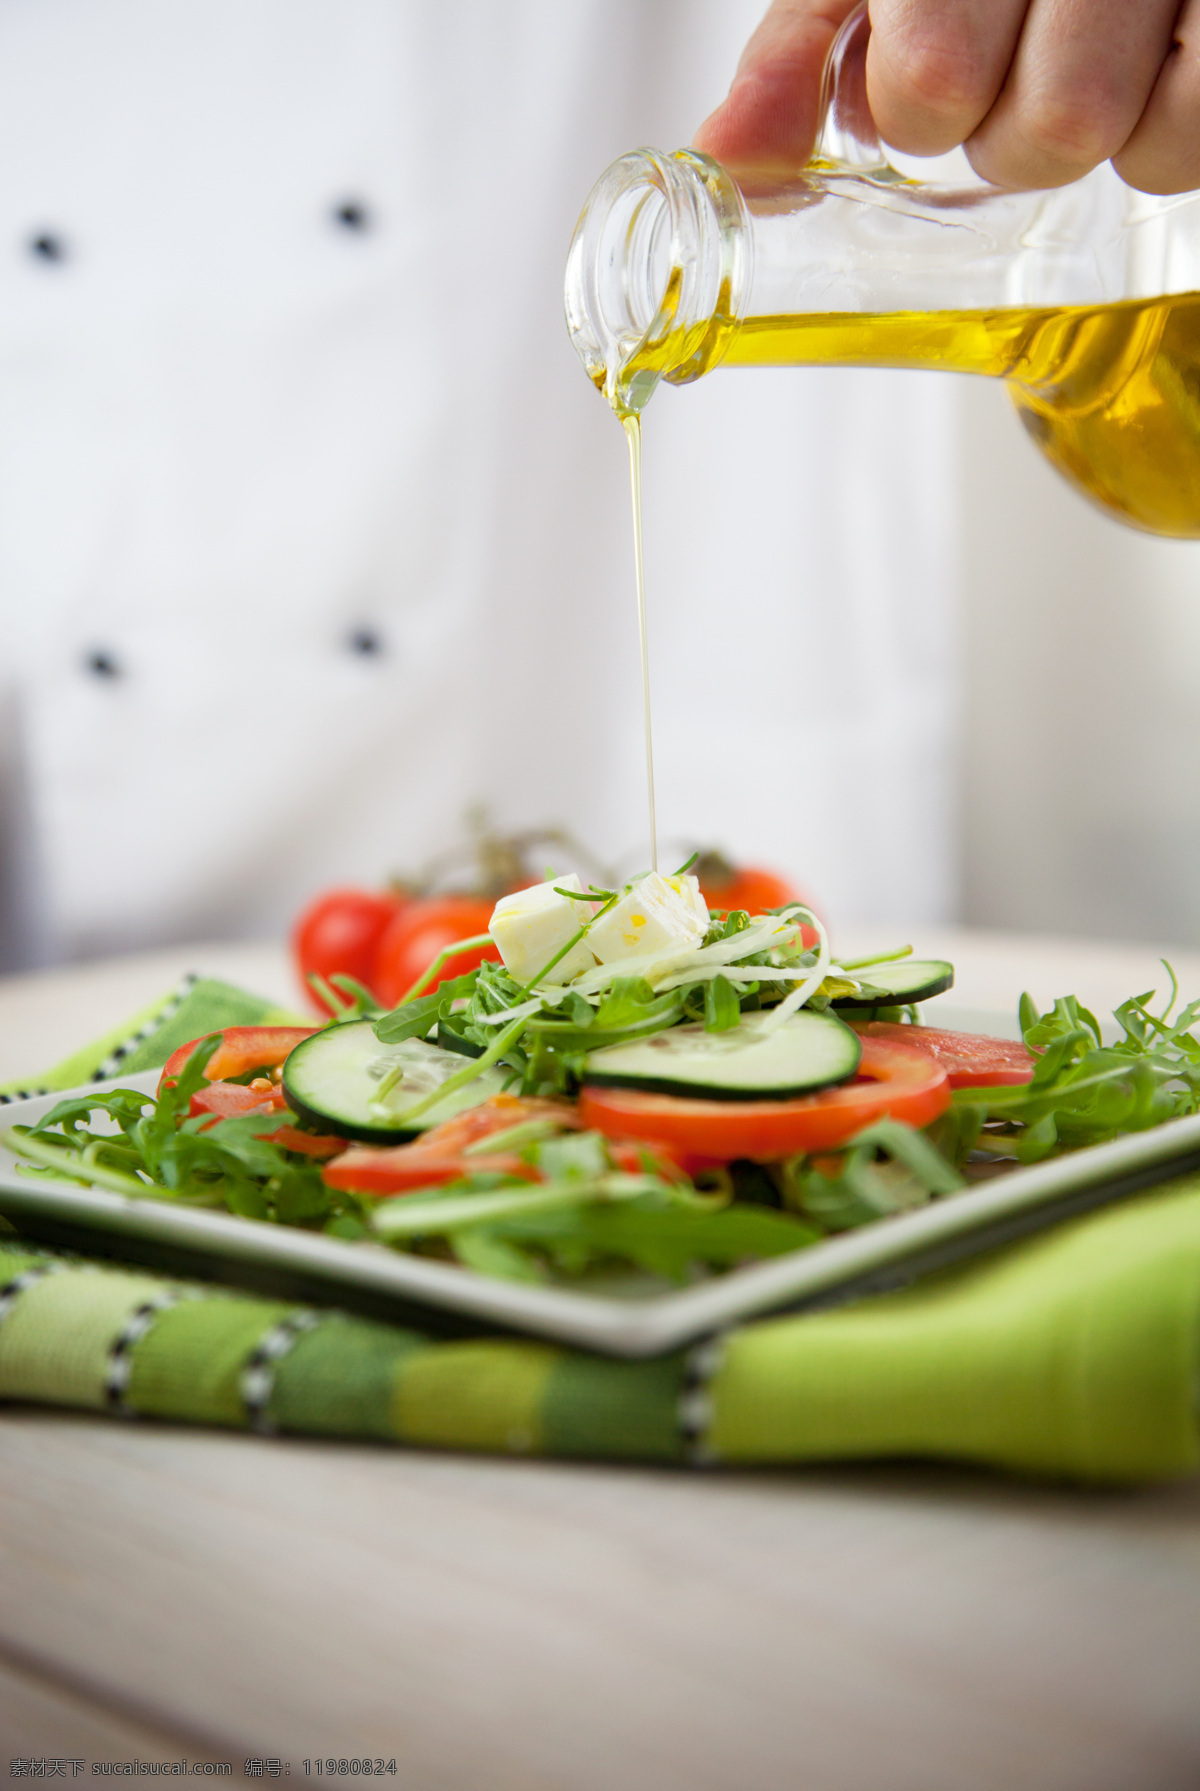 色拉油 蔬菜 沙拉 食用油 蔬菜沙拉 番茄 西红柿 黄瓜 其他类别 生活百科 白色